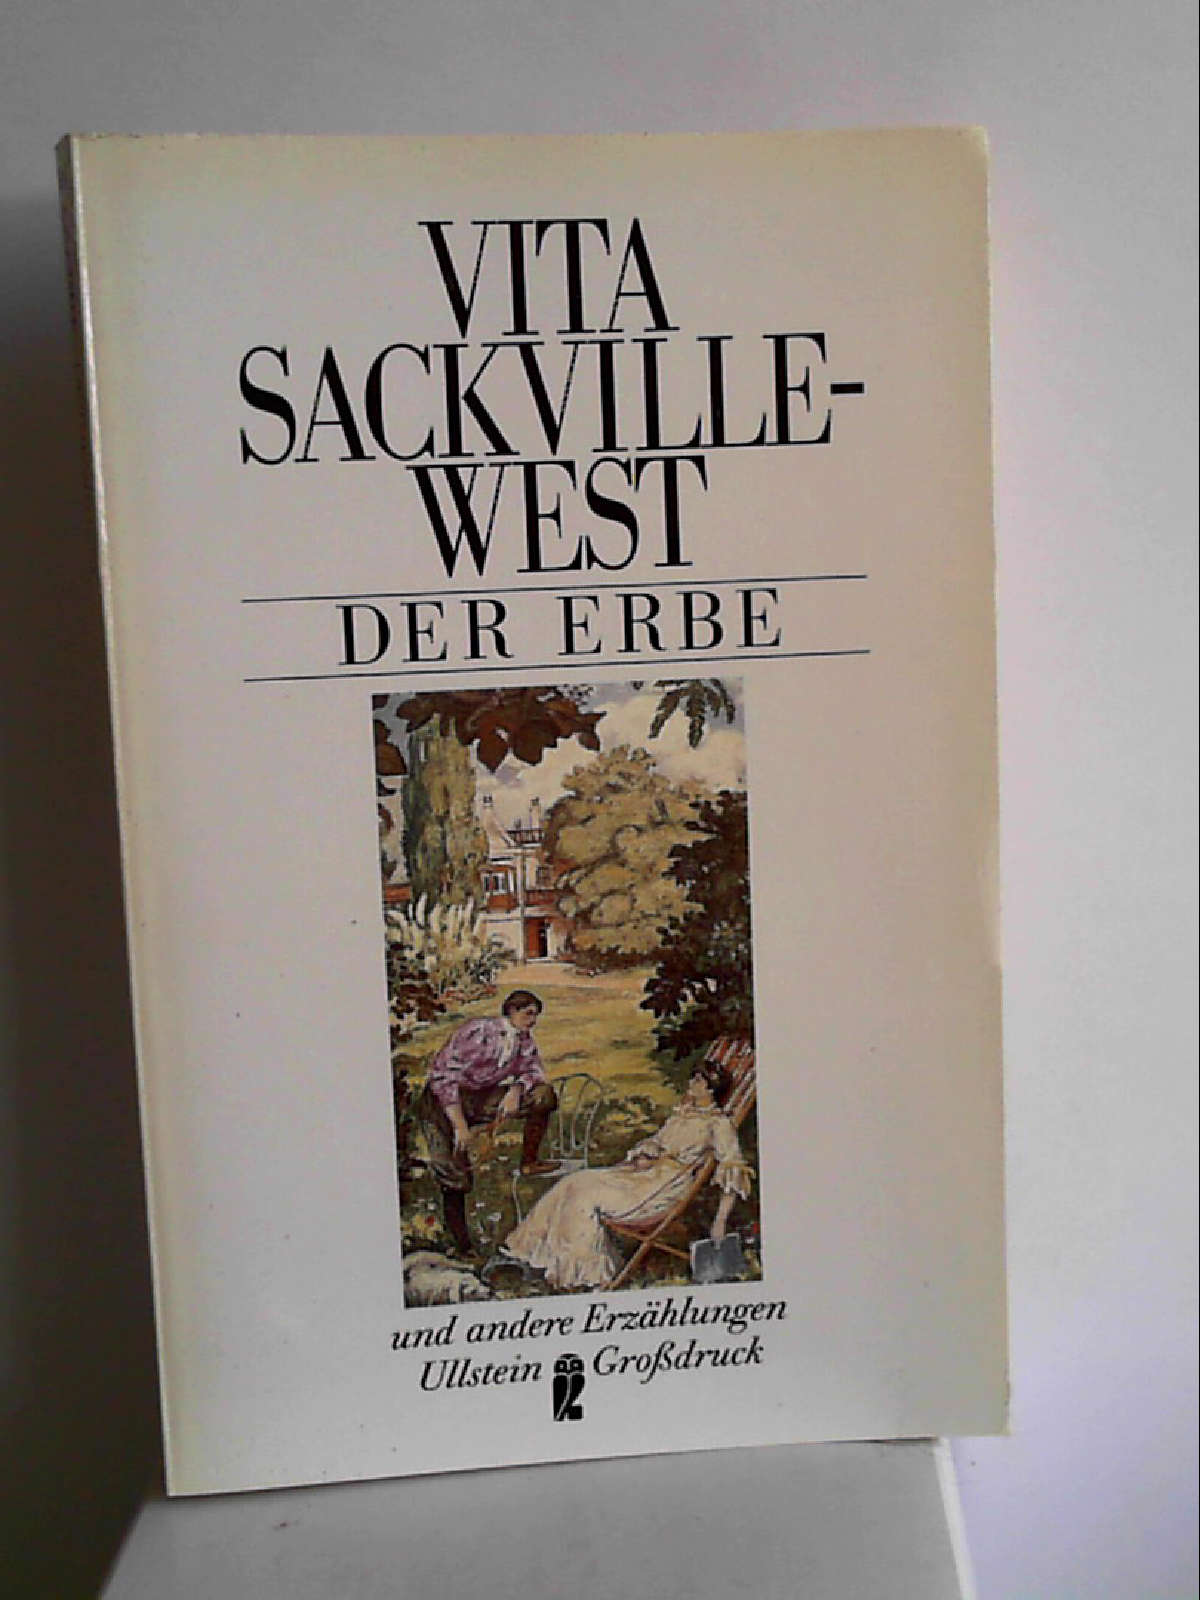 Der Erbe und andere Erzählungen. Großdruck. Sackville-West, Vita - Vita Sackville-West